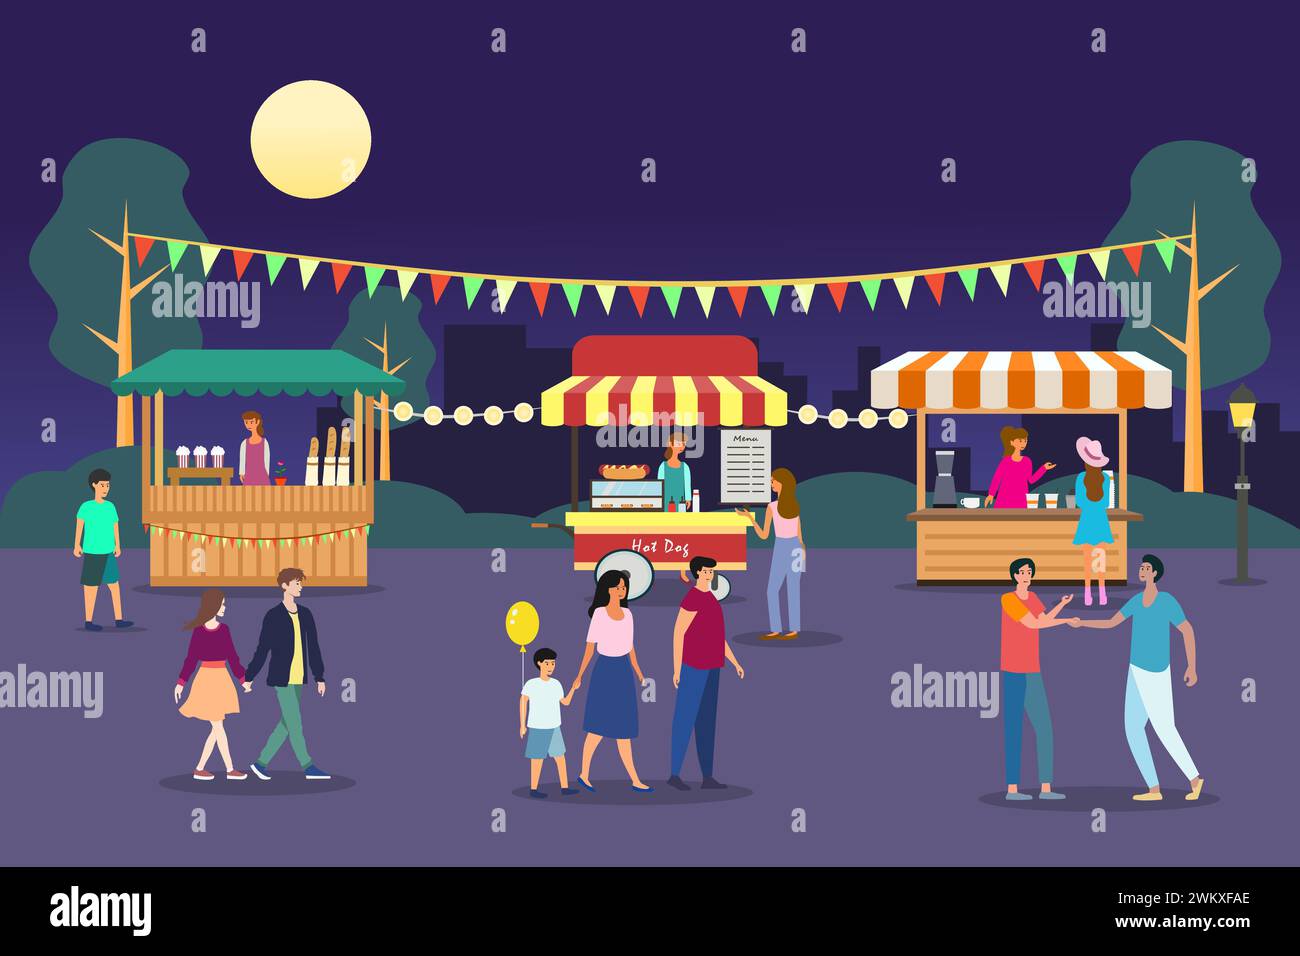 Nachtmarkt, Sommerfest, Illustration der Essensstraße. Nachtmarkt mit Menschenmenge. Stock Vektor